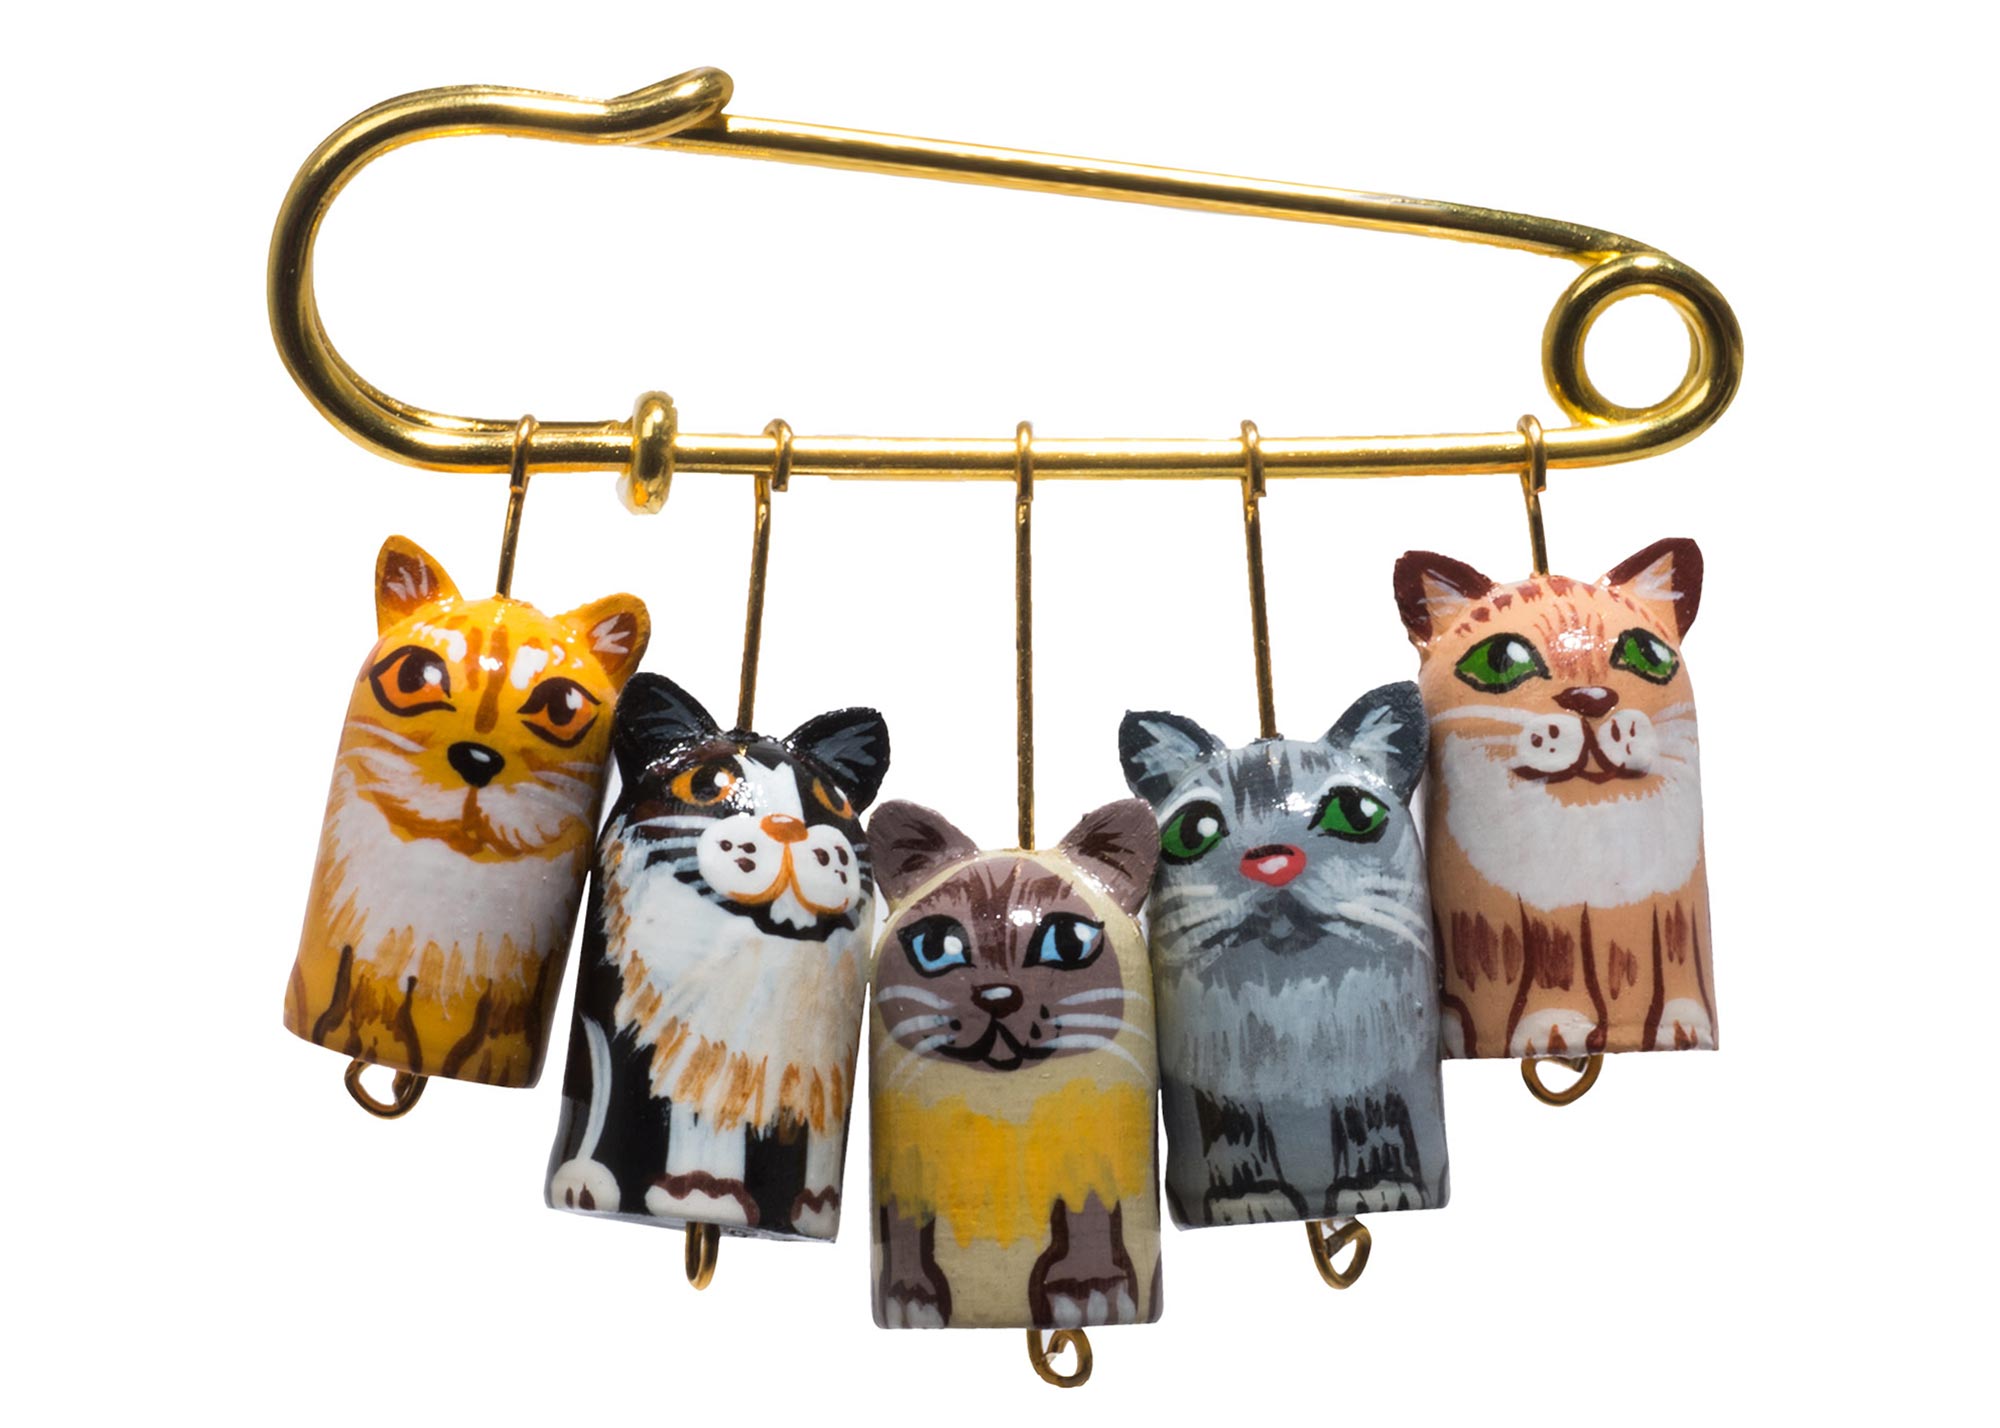 Buy Realistic Cats Lapel Pin 2.2"x1.5" at GoldenCockerel.com